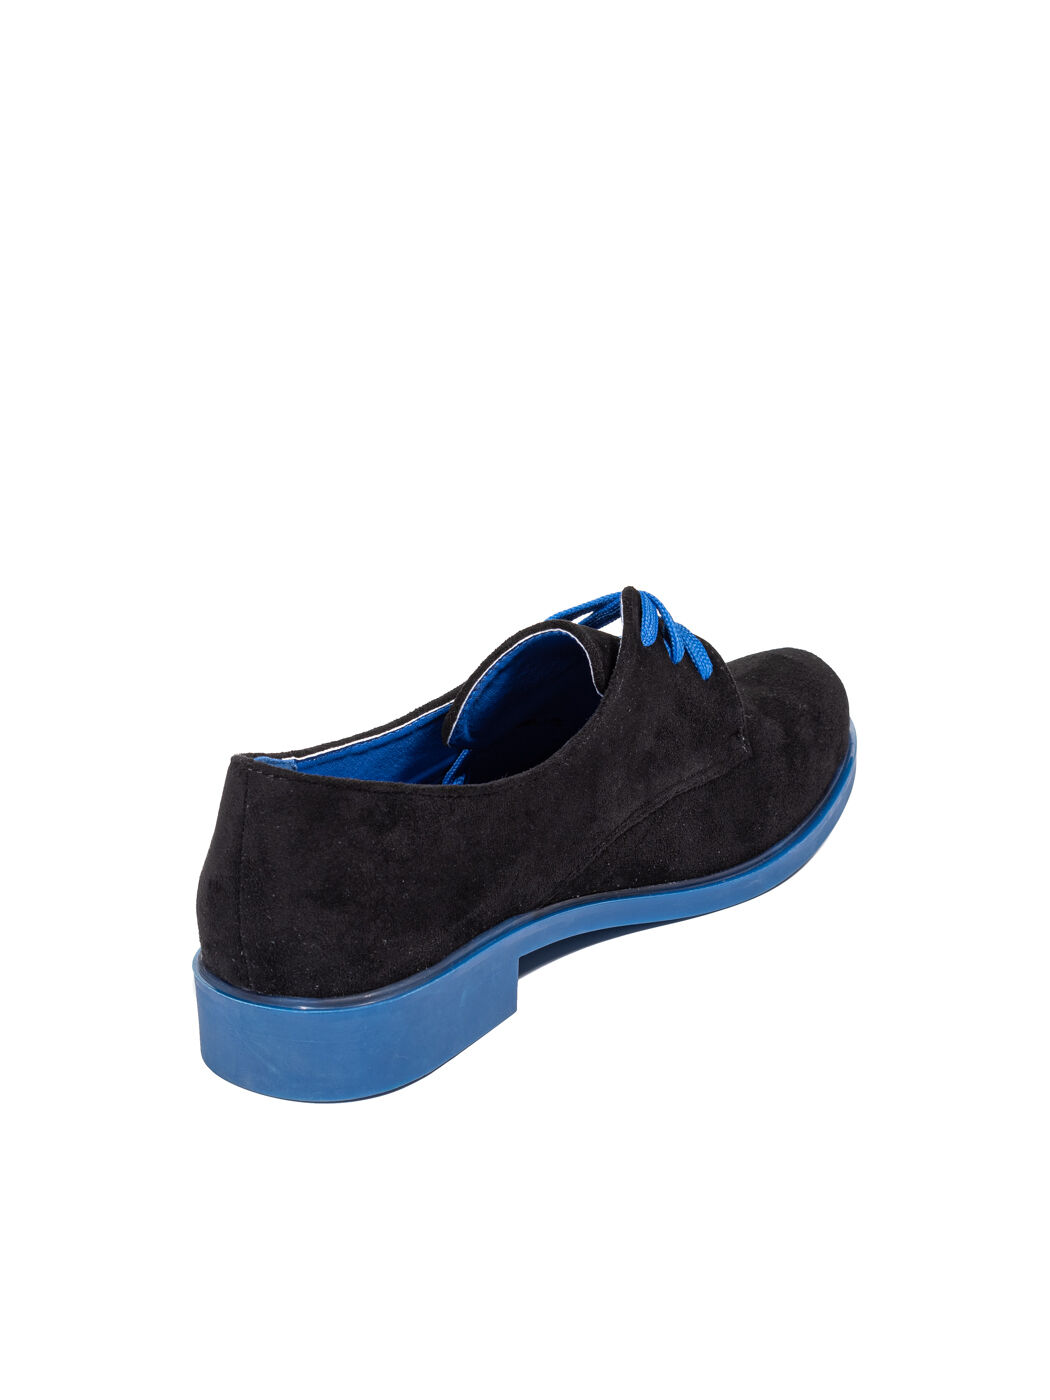 Туфли Oxfords женские чёрные экозамша каблук устойчивый демисезон 8M вид 0